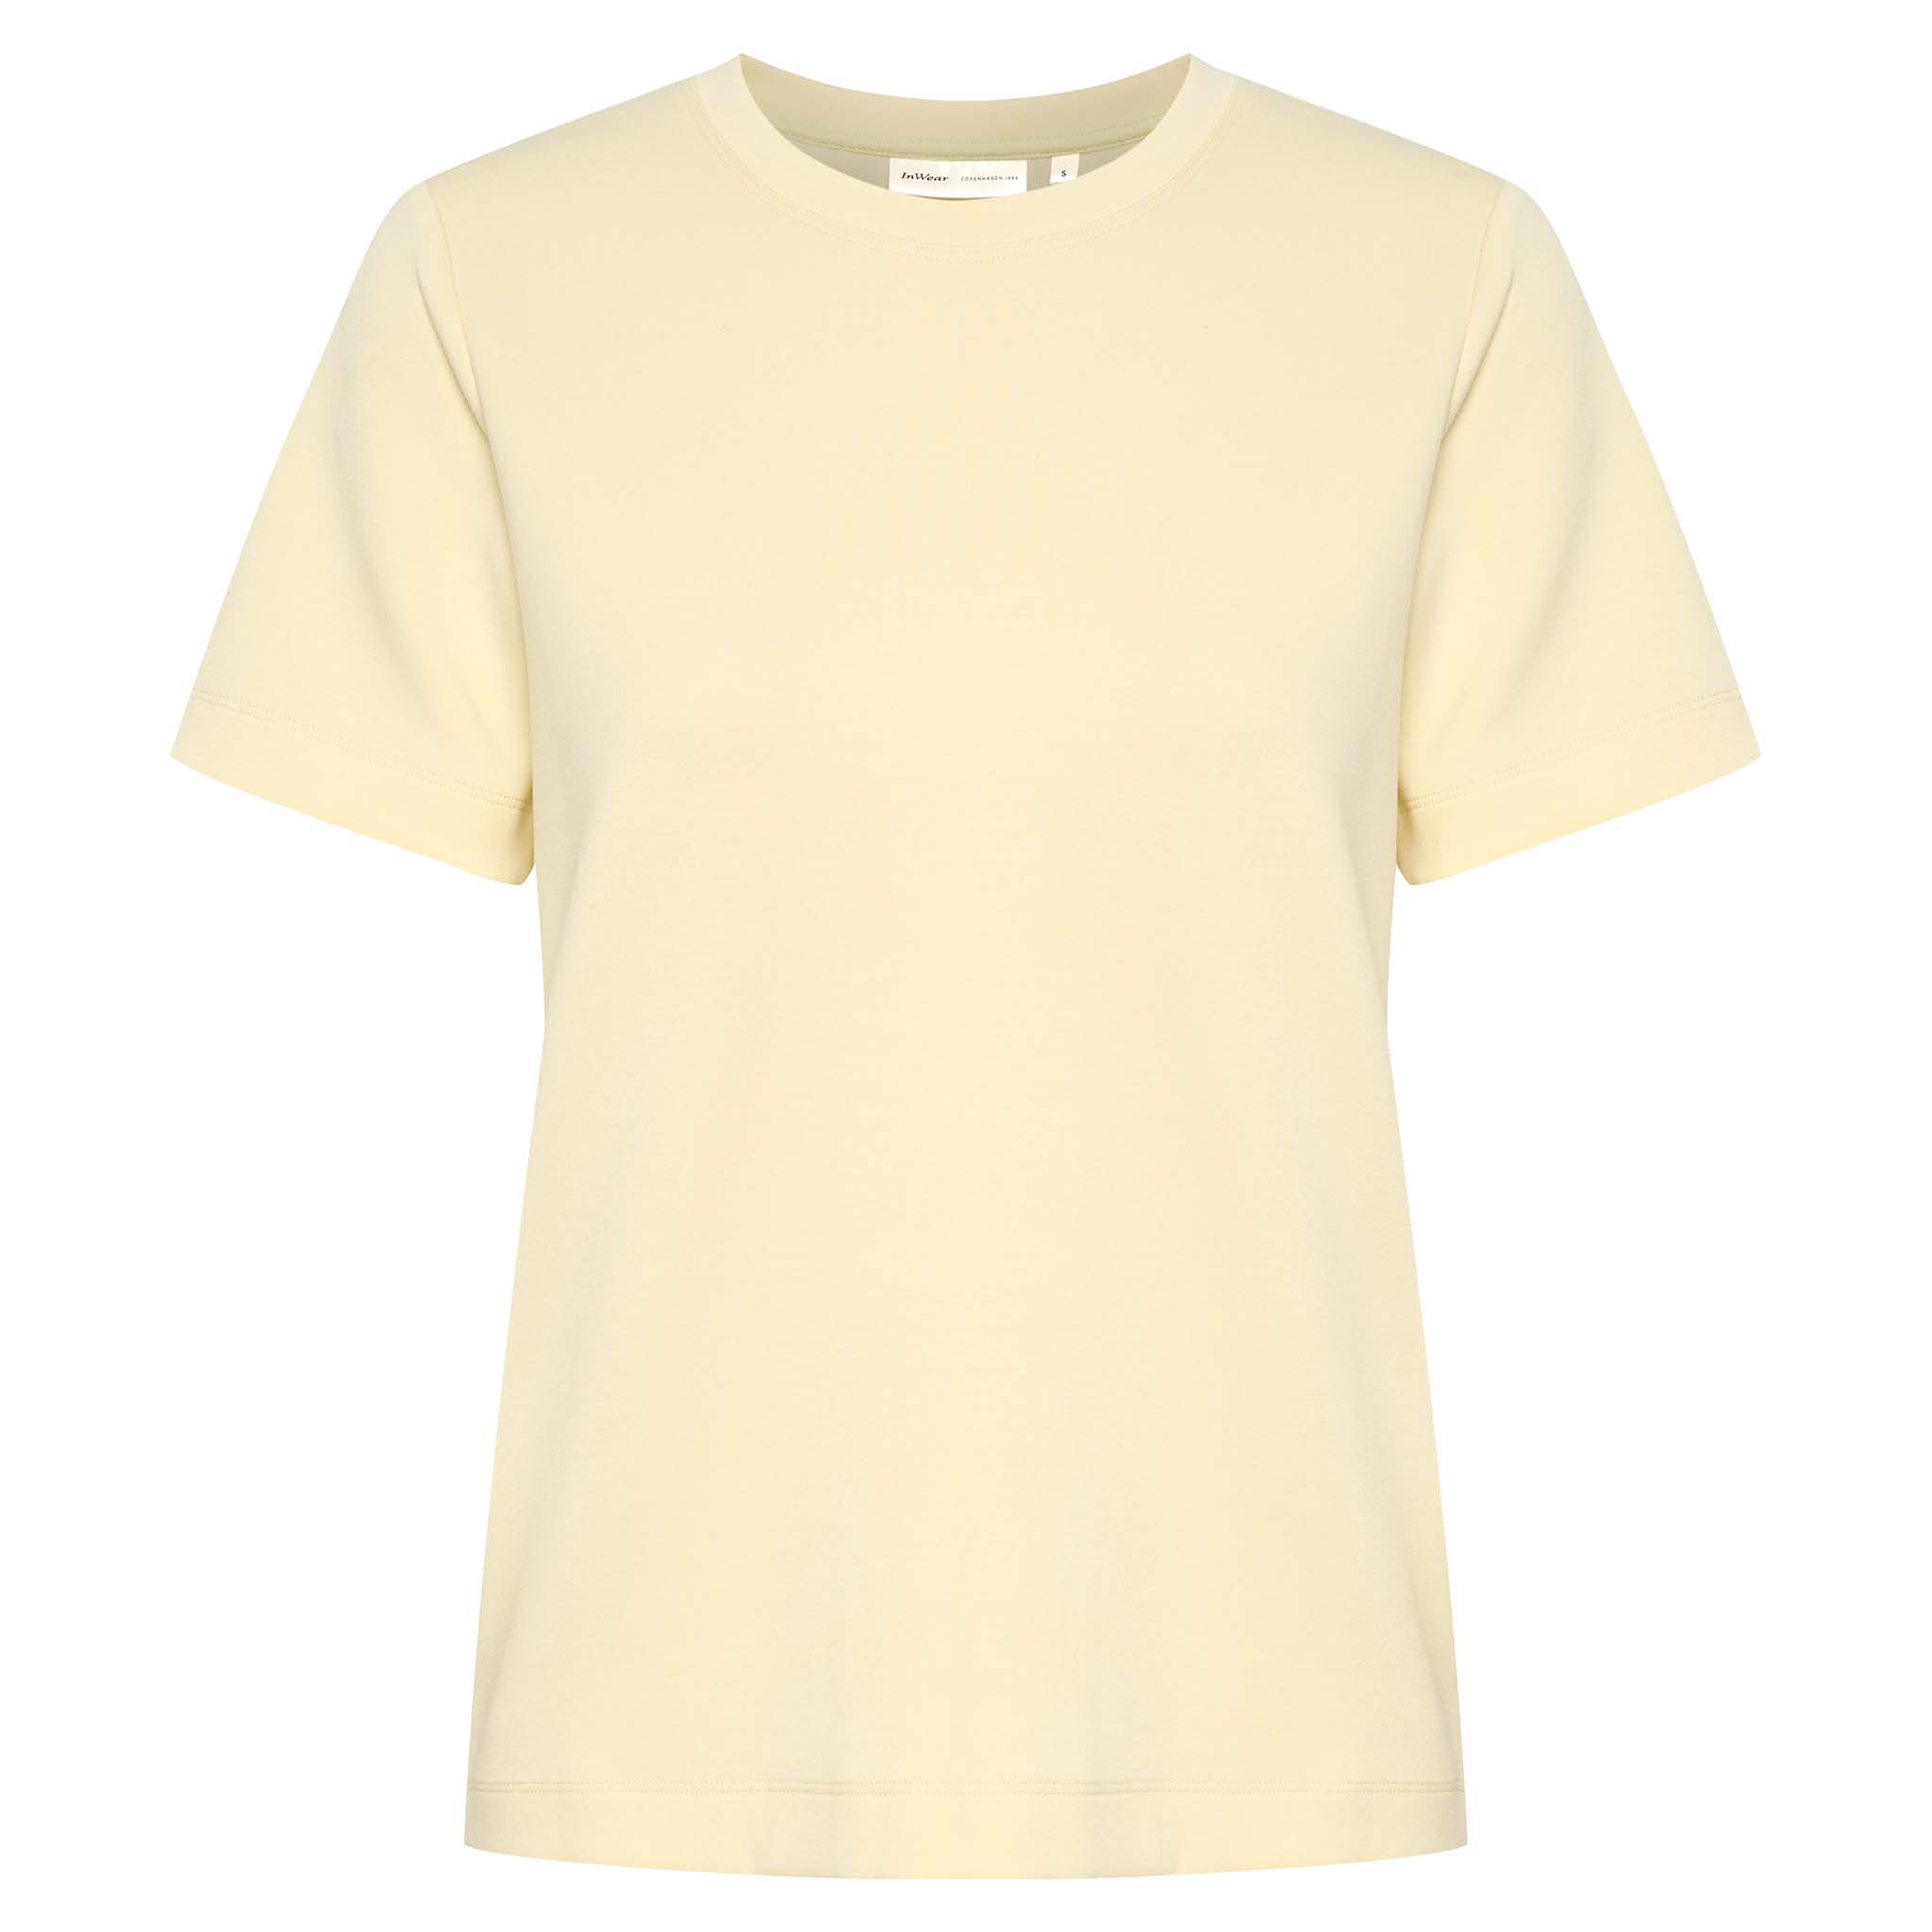 In Wear, vaaleankeltainen, siistimpi t-paita. Etukuva.